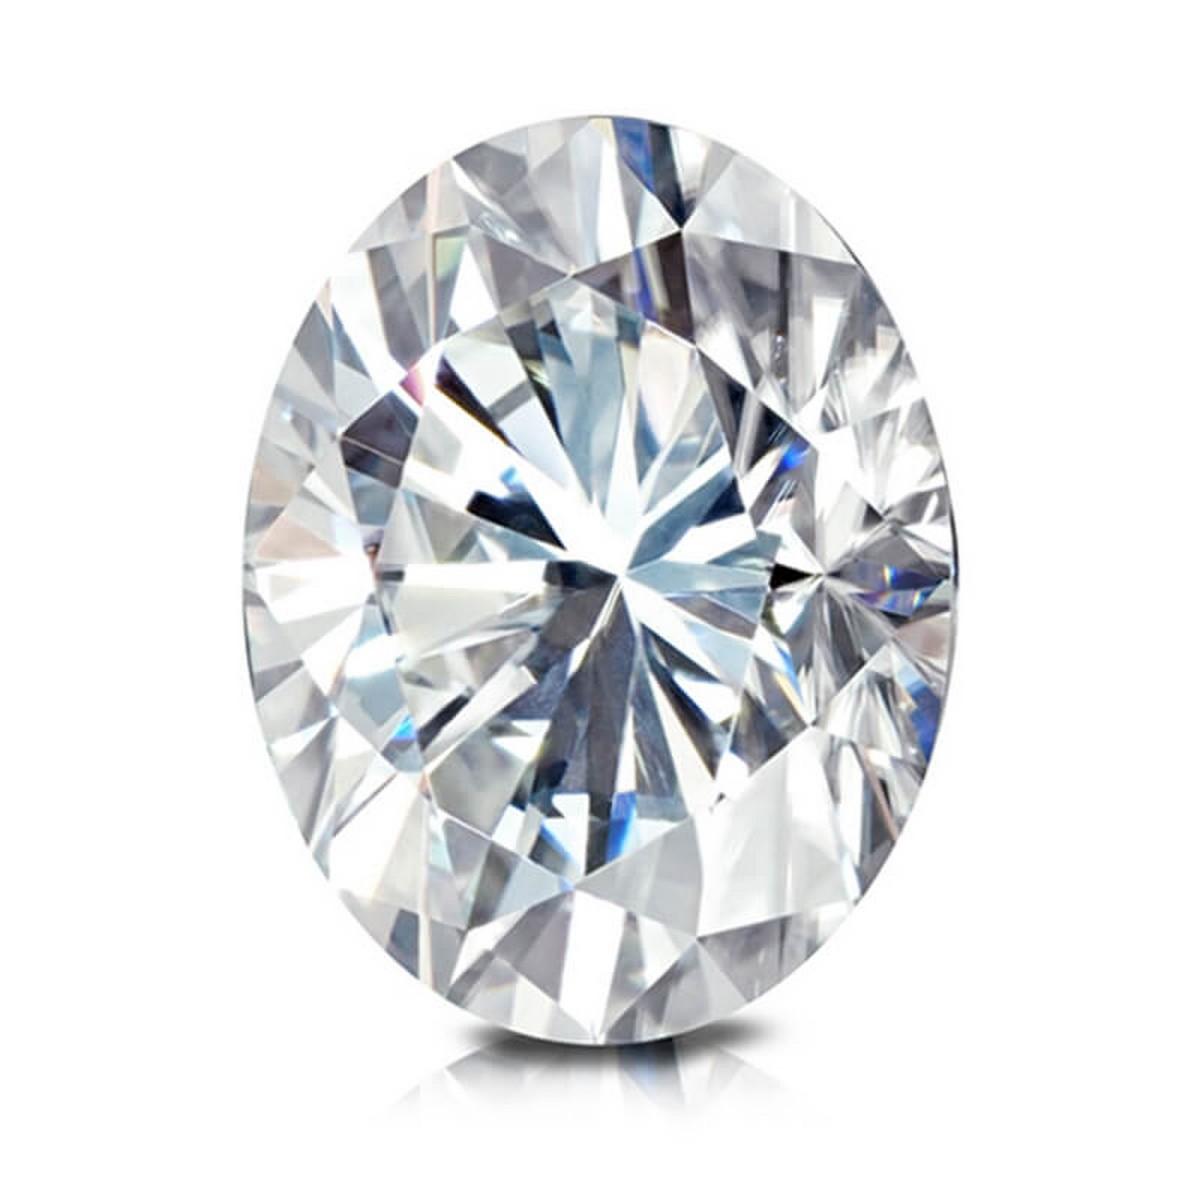 3.2 ctw. SI1 GIA Certified Oval Cut Loose Diamond (LAB GROWN)